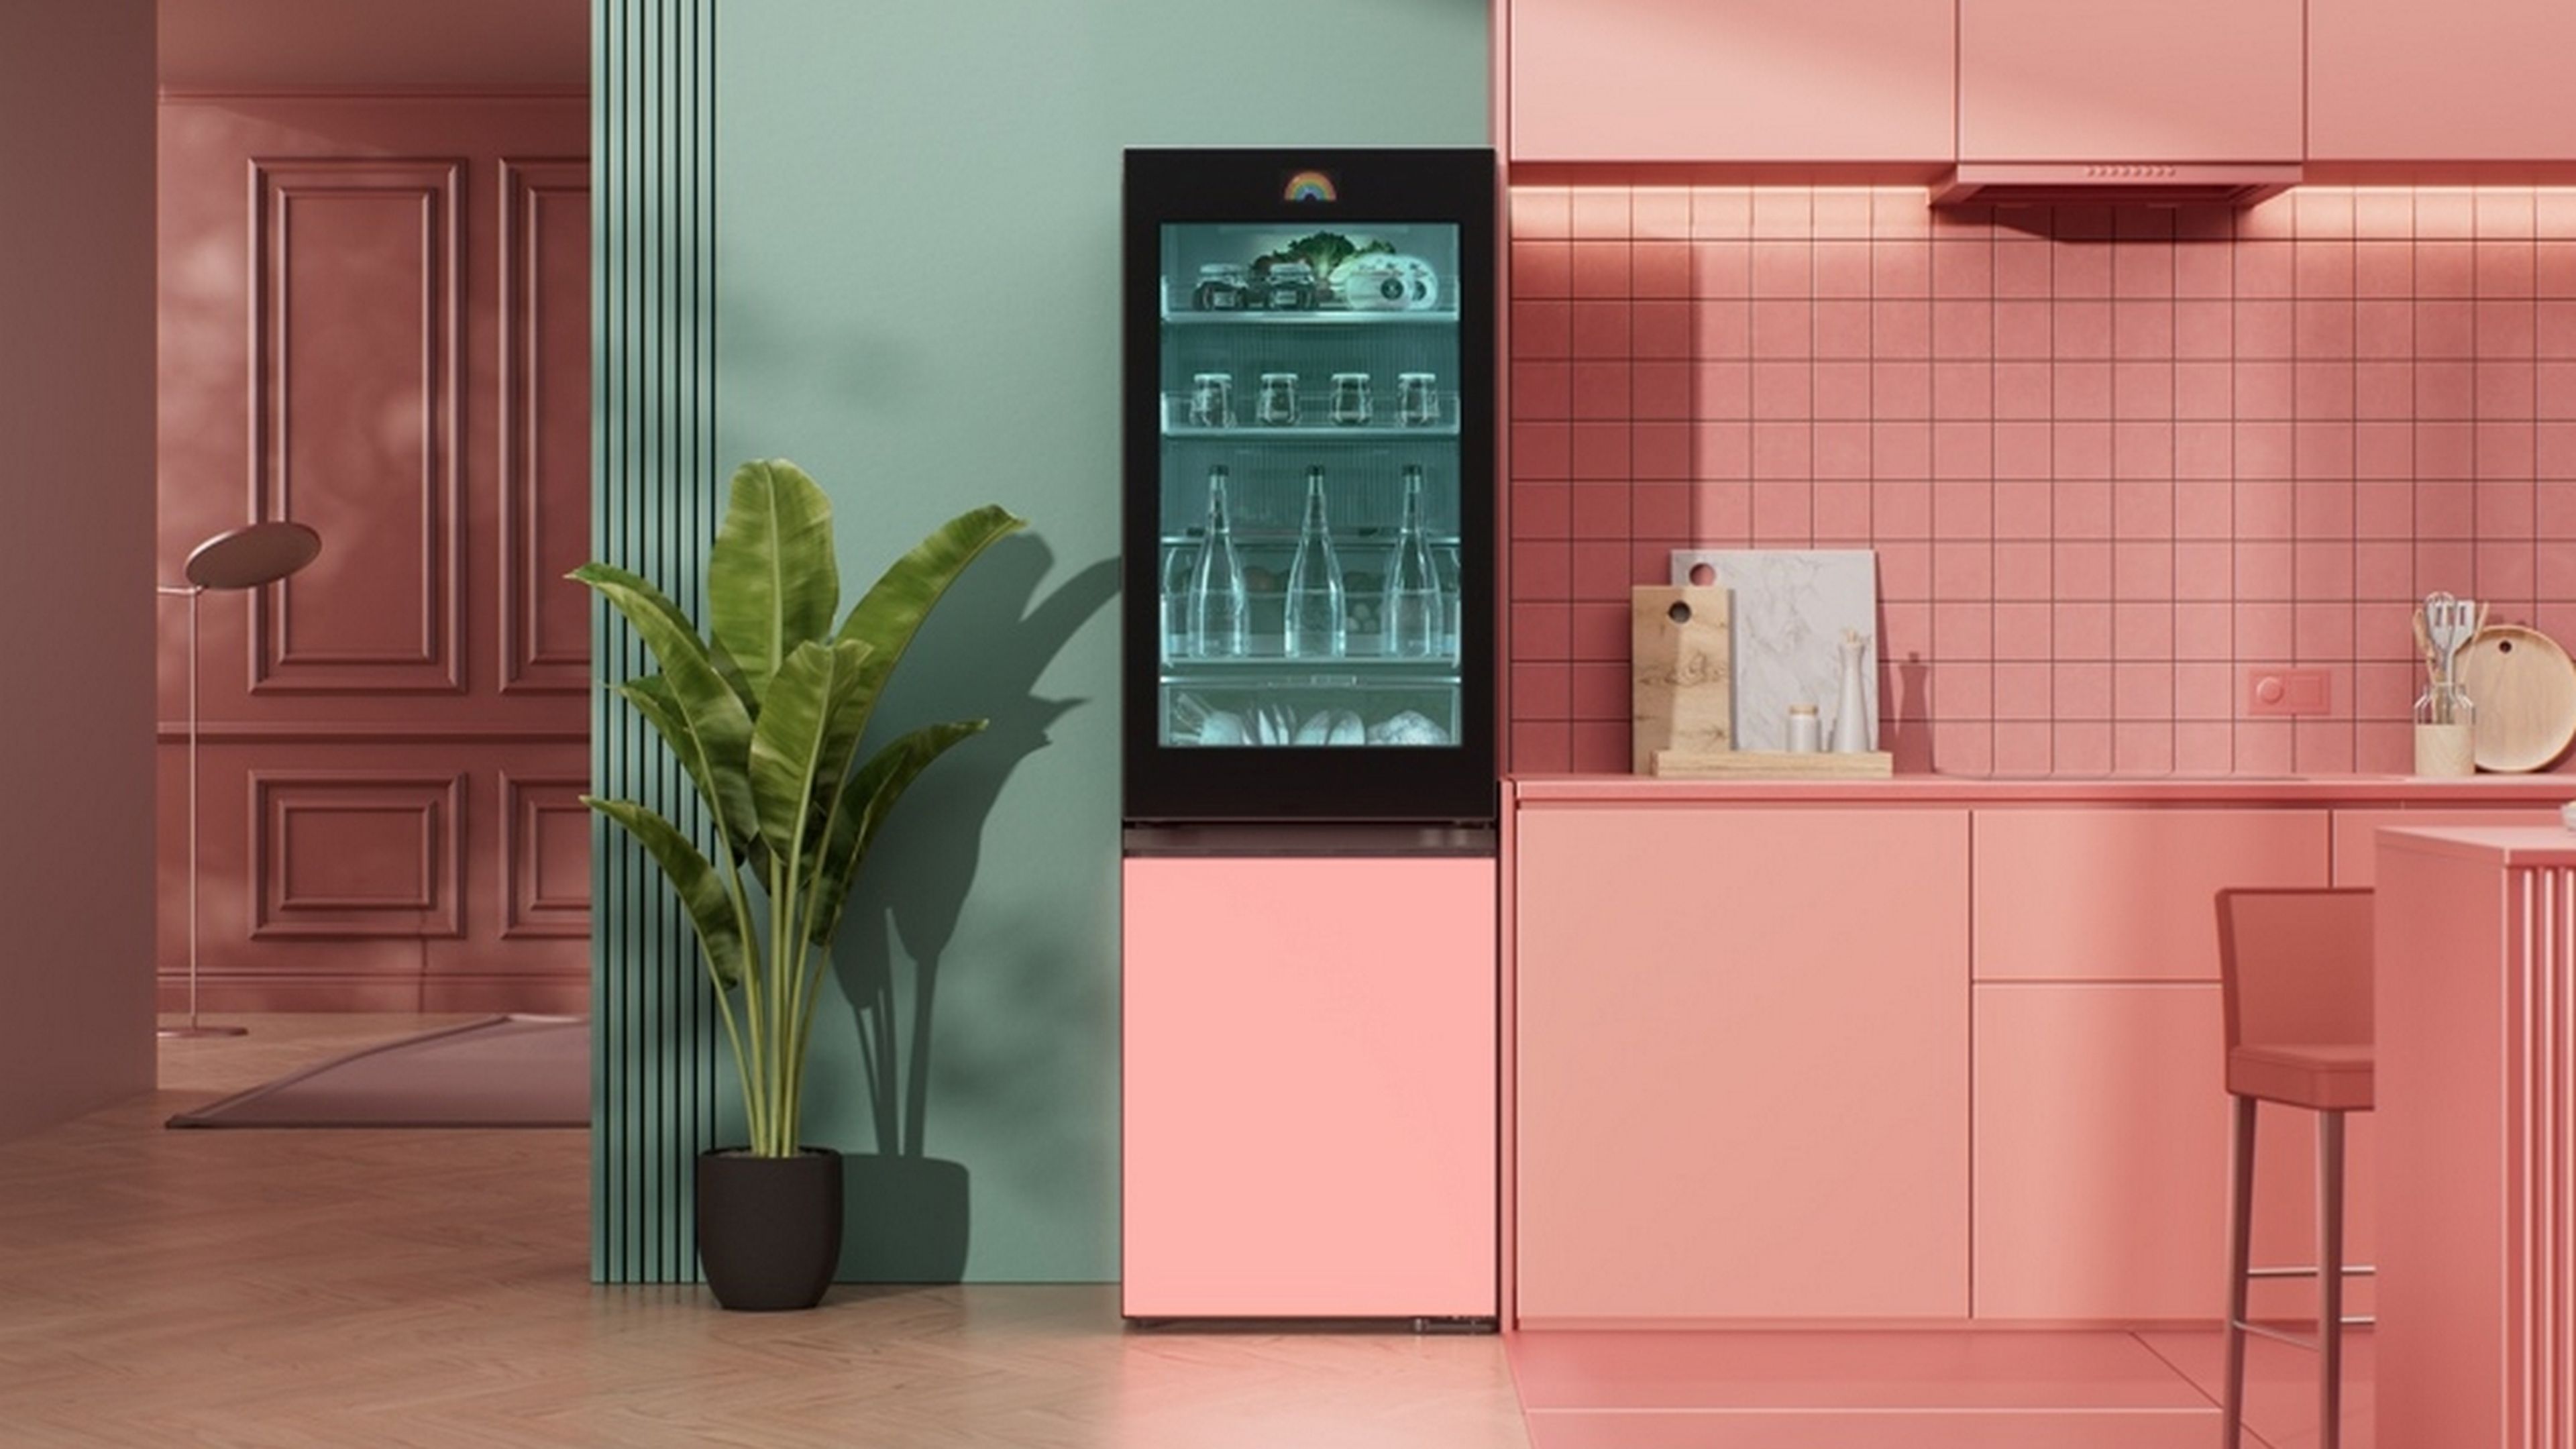 LG estrena en España los frigoríficos LG Mood Up, con pantallas dinámica LED y altavoces